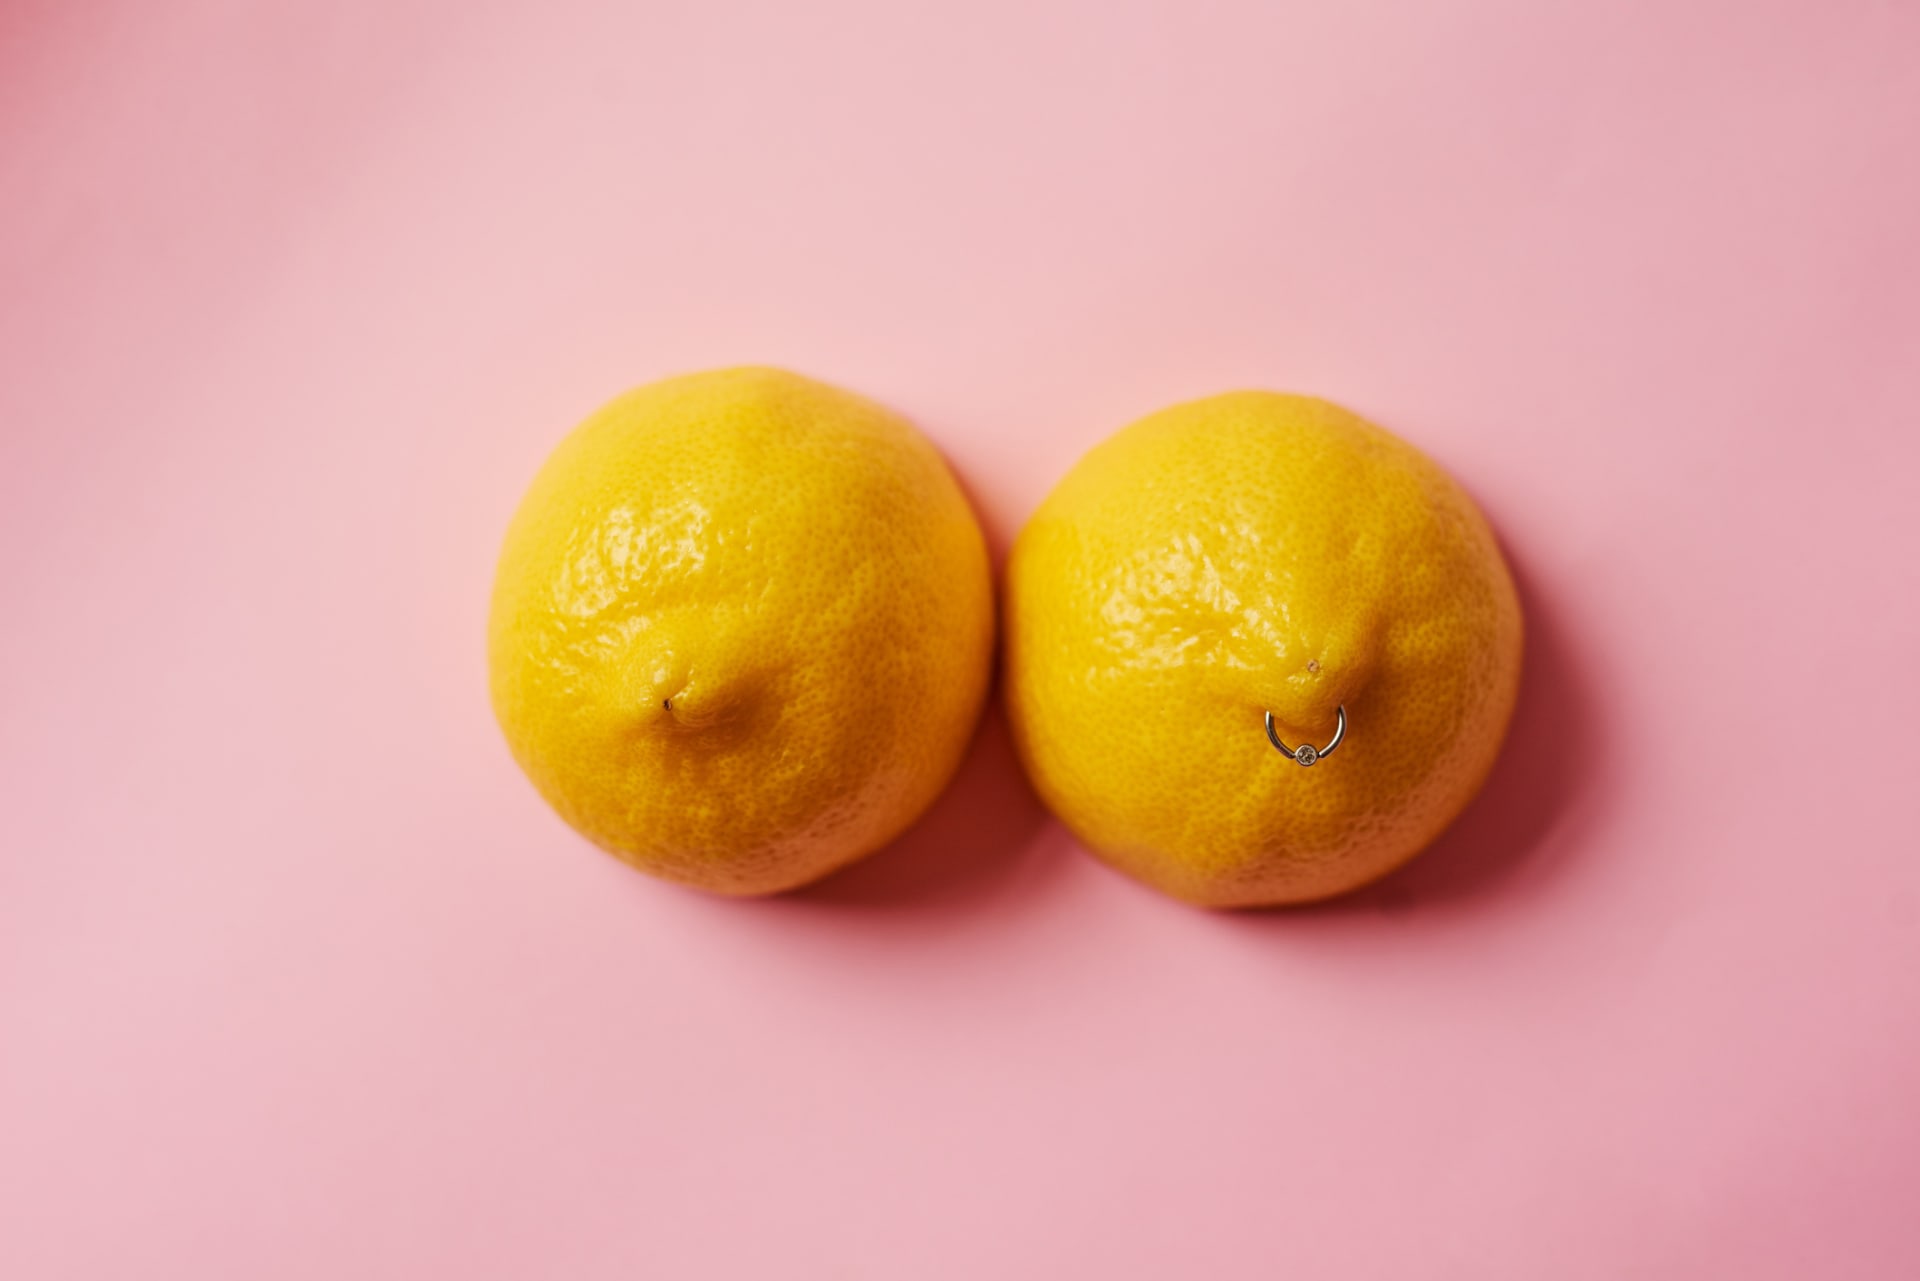 Jak poznat rakovinu prsu? Pomoci vám může i slavný obrázek s citrony!